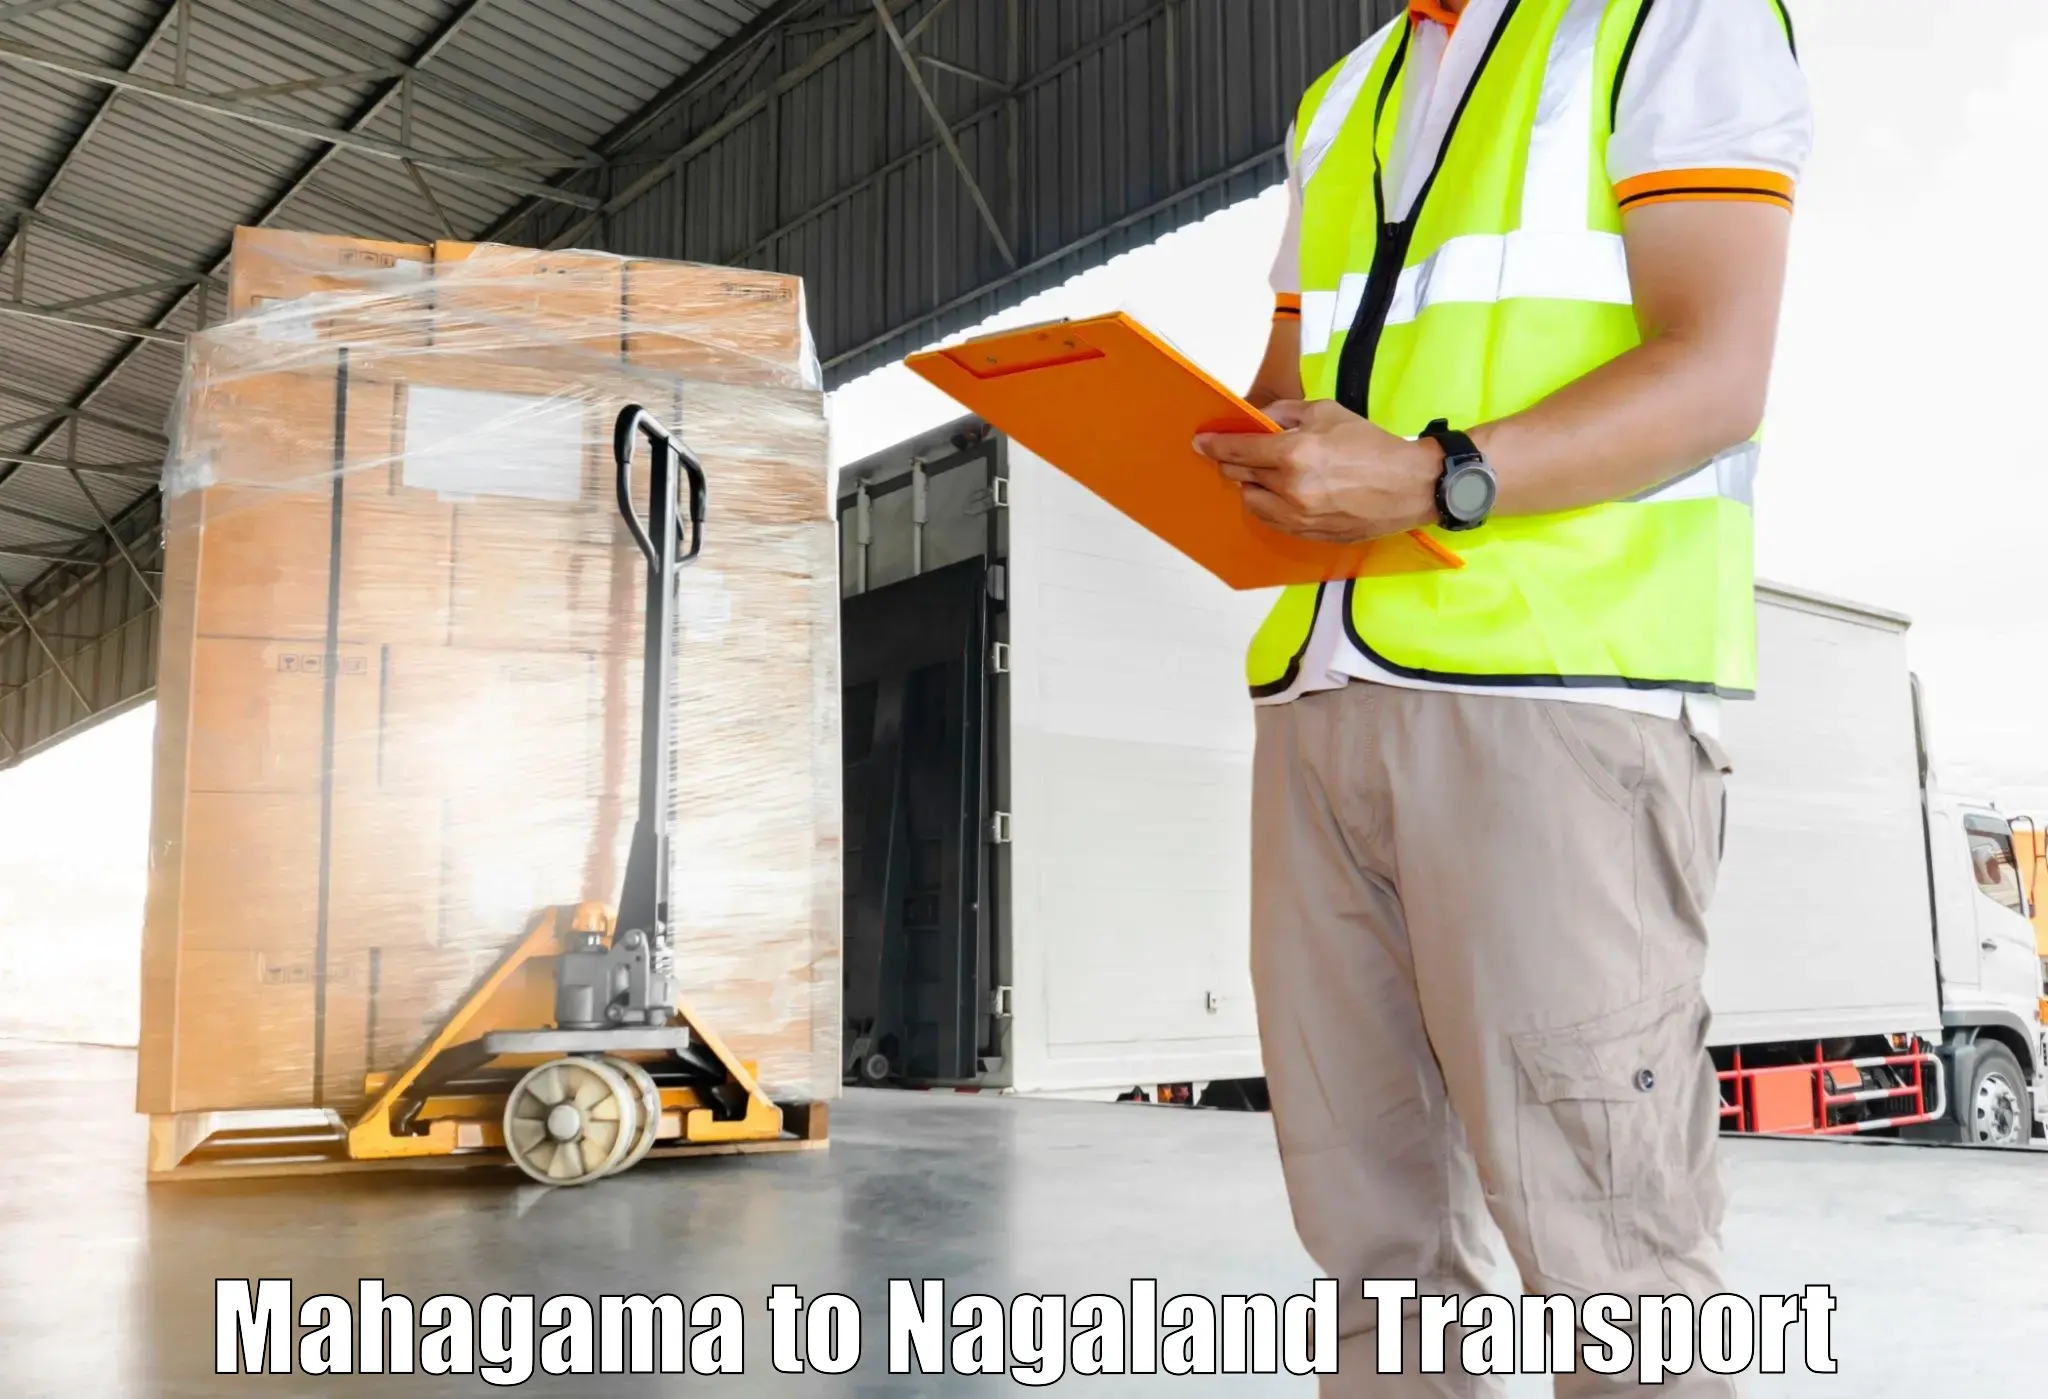 Shipping partner Mahagama to Nagaland